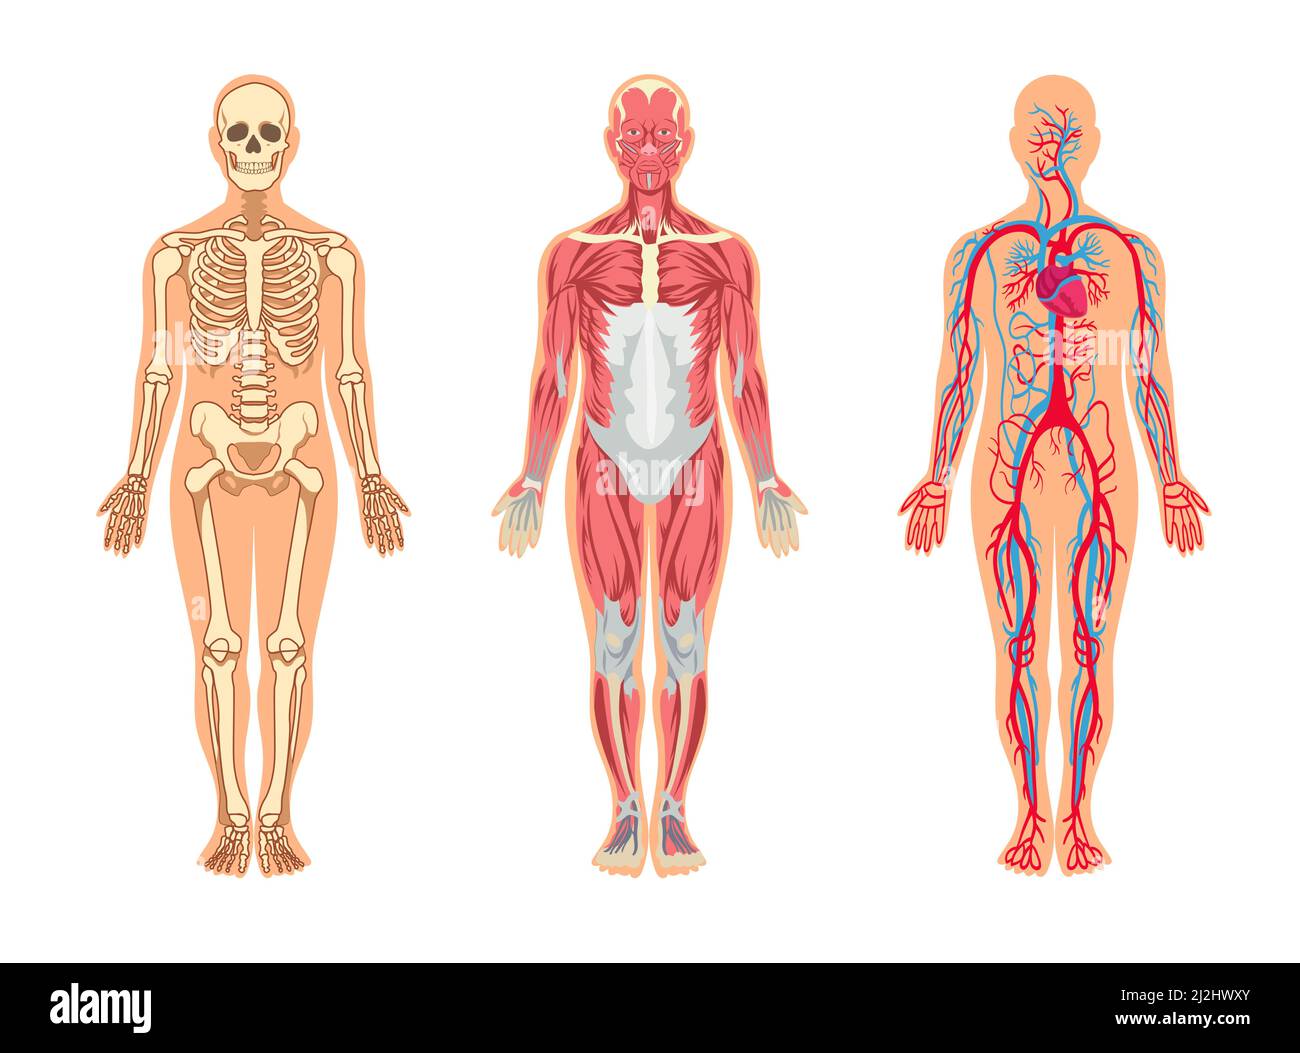 Muscoli e ossa nel set di illustrazioni vettoriali del corpo umano. Uomo cartoon con scheletro e struttura dei vasi sanguigni, vene, arterie, sistema muscolare, isolo Illustrazione Vettoriale